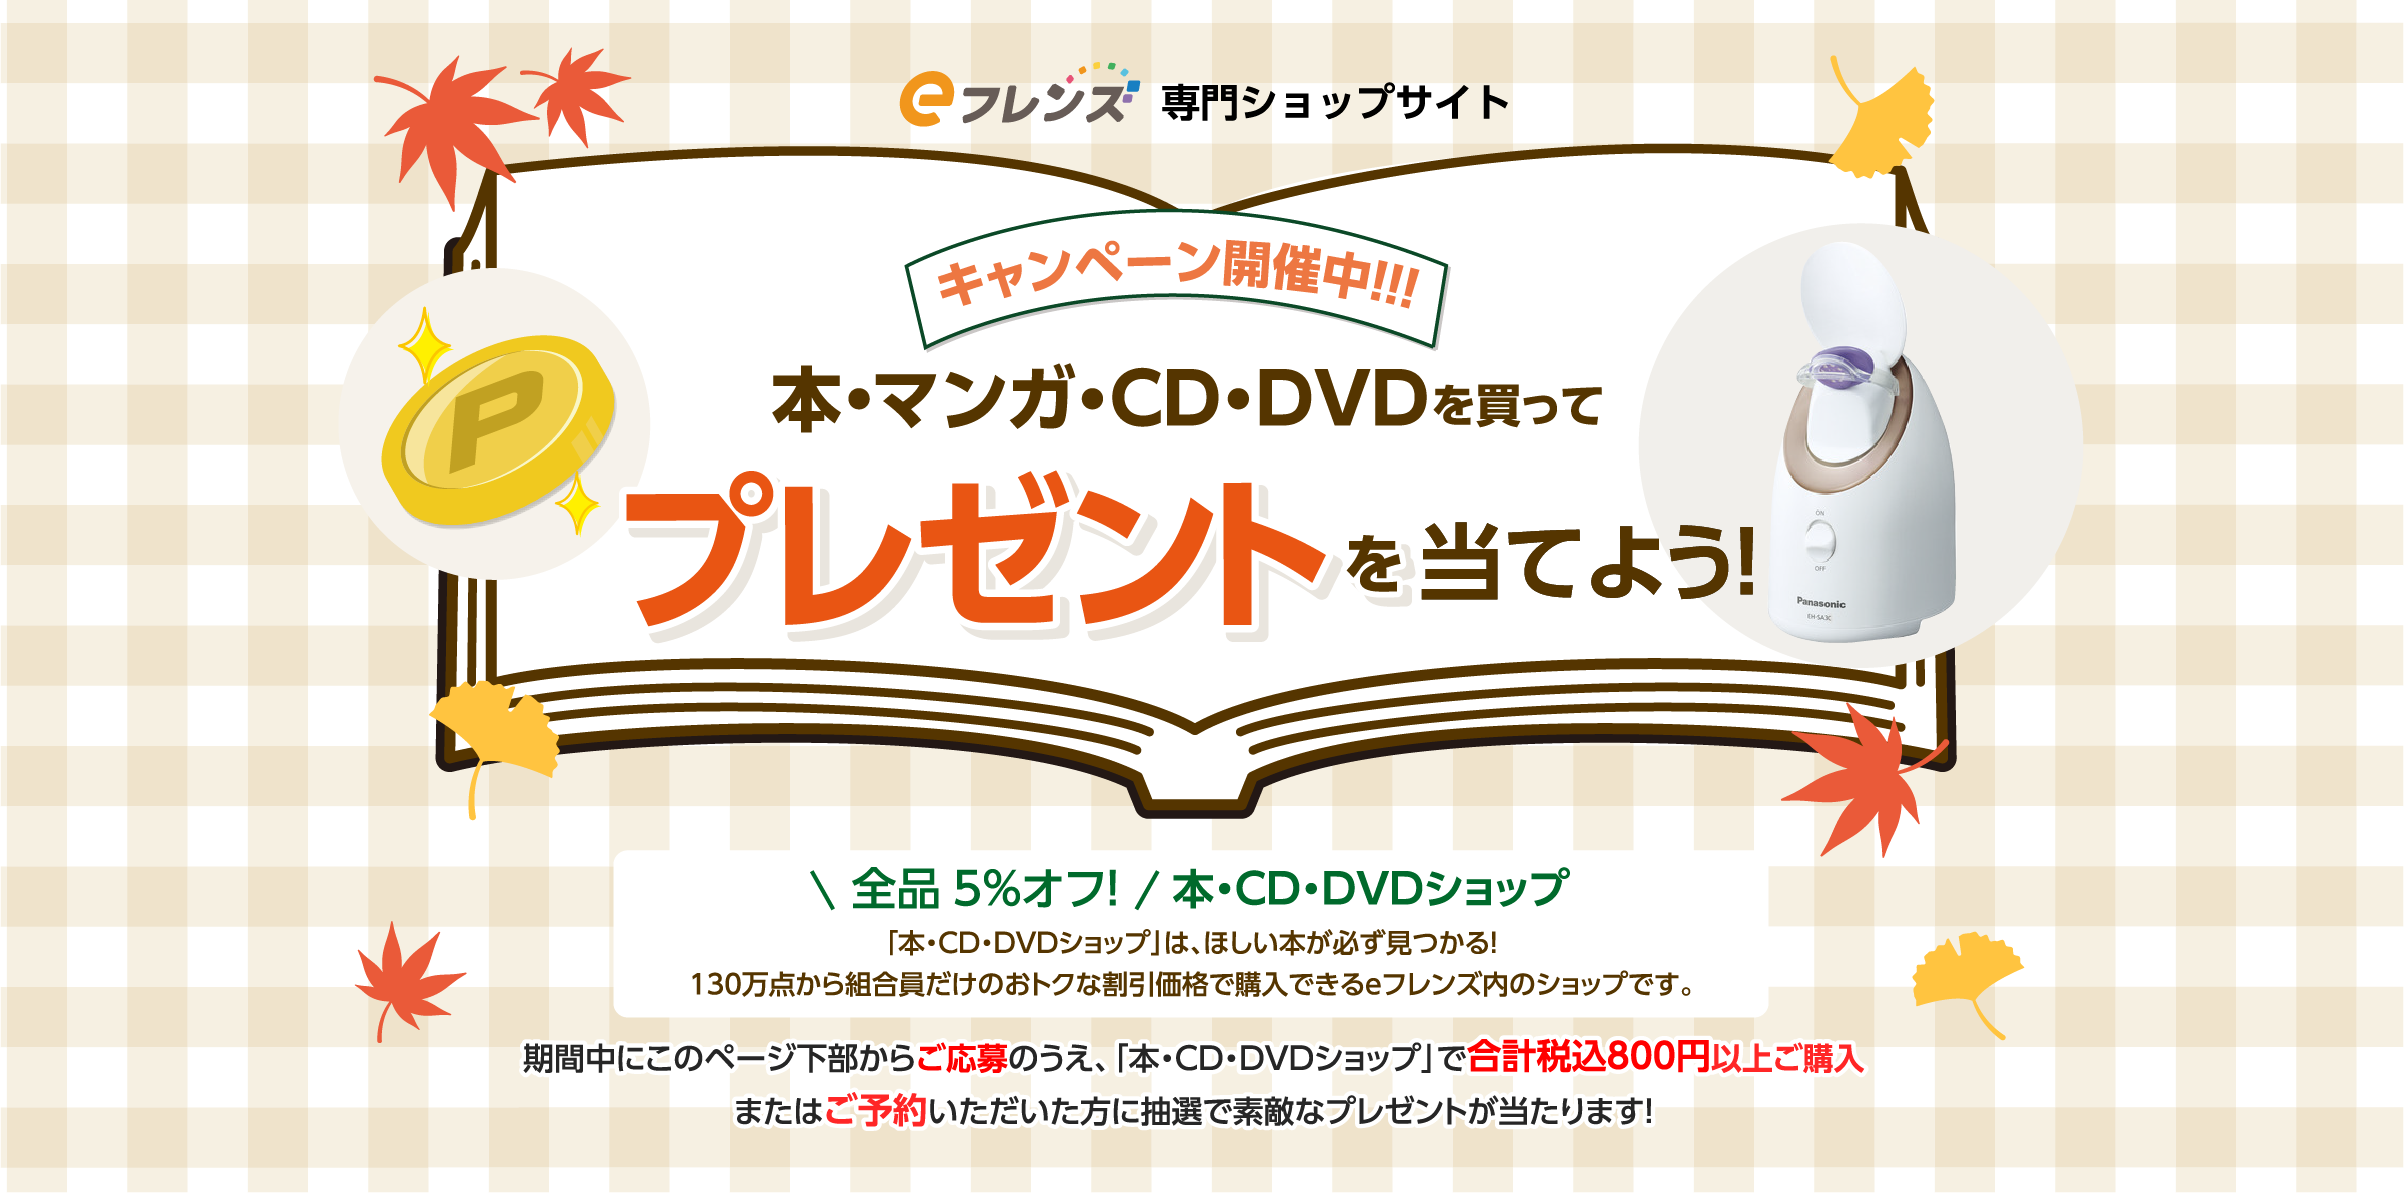 キャンペーン開催中！！！本・マンガ・CD・DVDを買ってプレゼントを当てよう！全品5%オフ！本・CD・DVDショップ「本・CD・DVDショップ」は、ほしい本が必ず見つかる！130万点から組合員だけのおトクな割引価格で購入できるｅフレンズ内のショップです。期間中にこのページ下部からご応募のうえ、「本・CD・DVDショップ」で合計税込800円以上ご購入またはご予約いただいた方に抽選で素敵なプレゼントが当たります！